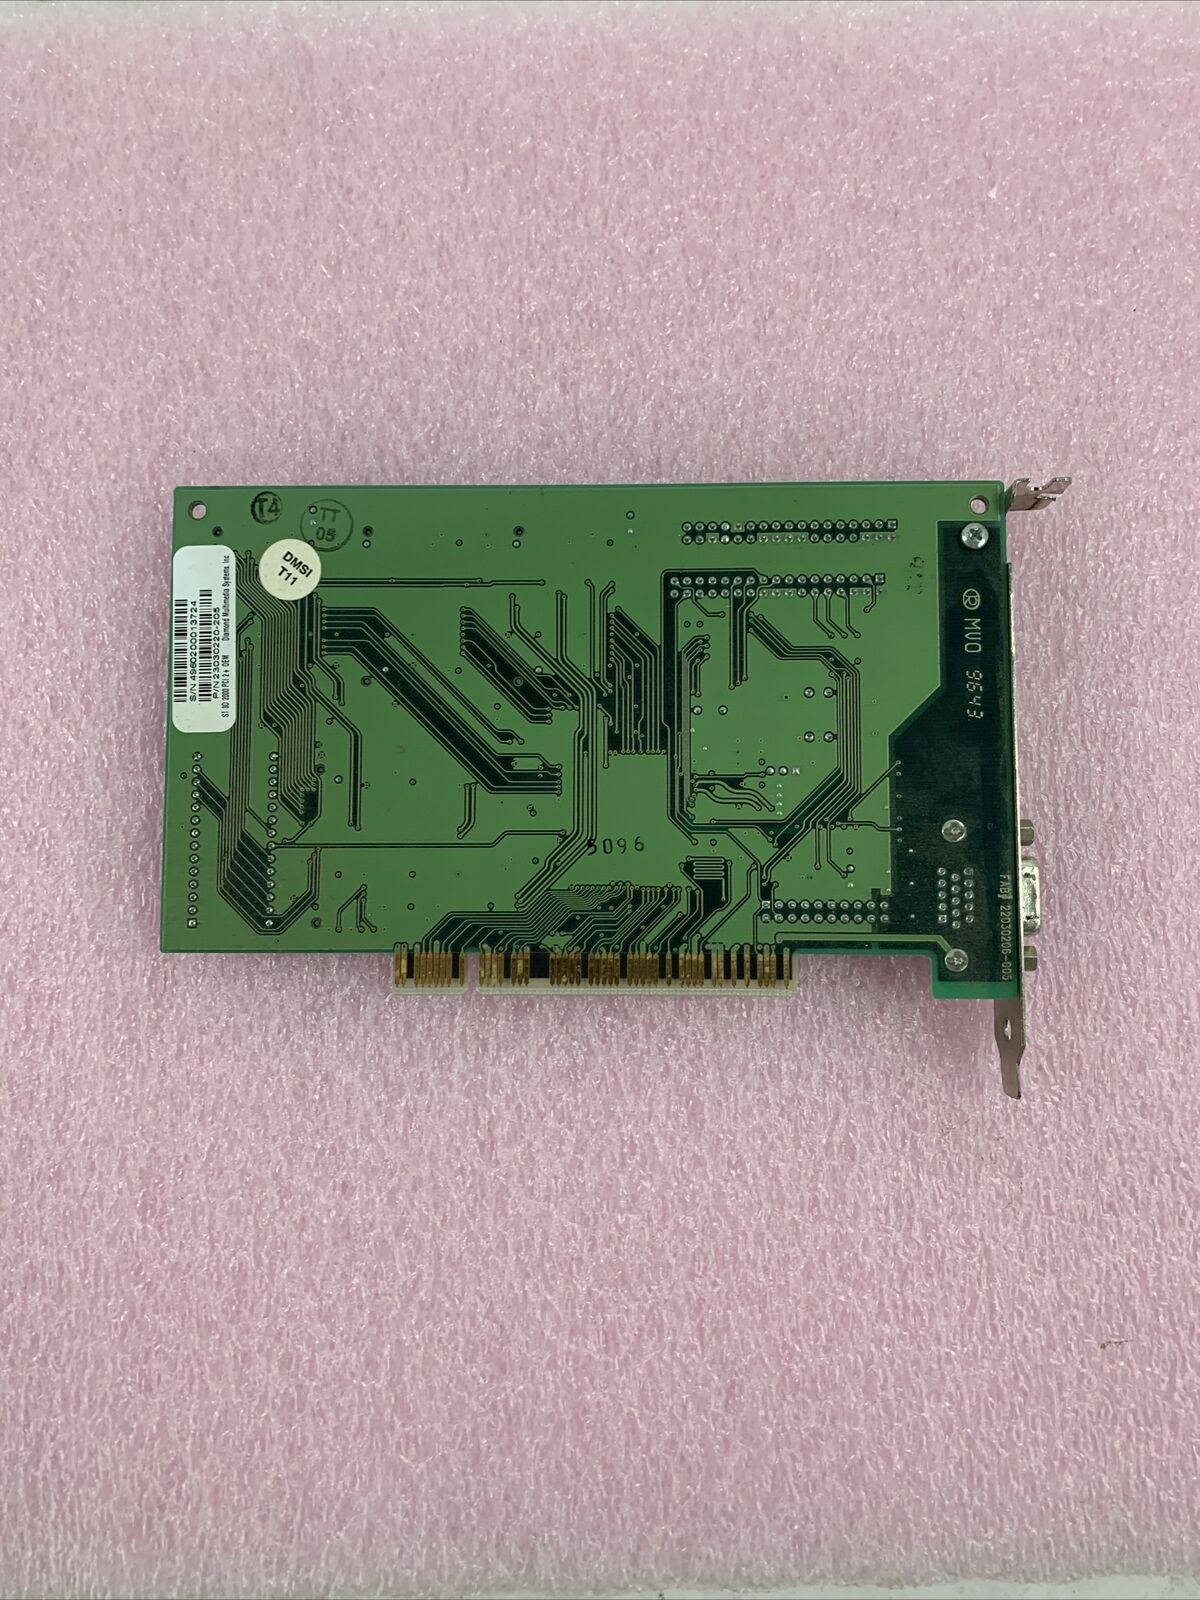 VINTAGE DIAMOND STEALTH 3D 2000 S3 VIRGE 4 MB PCI VGA CARD